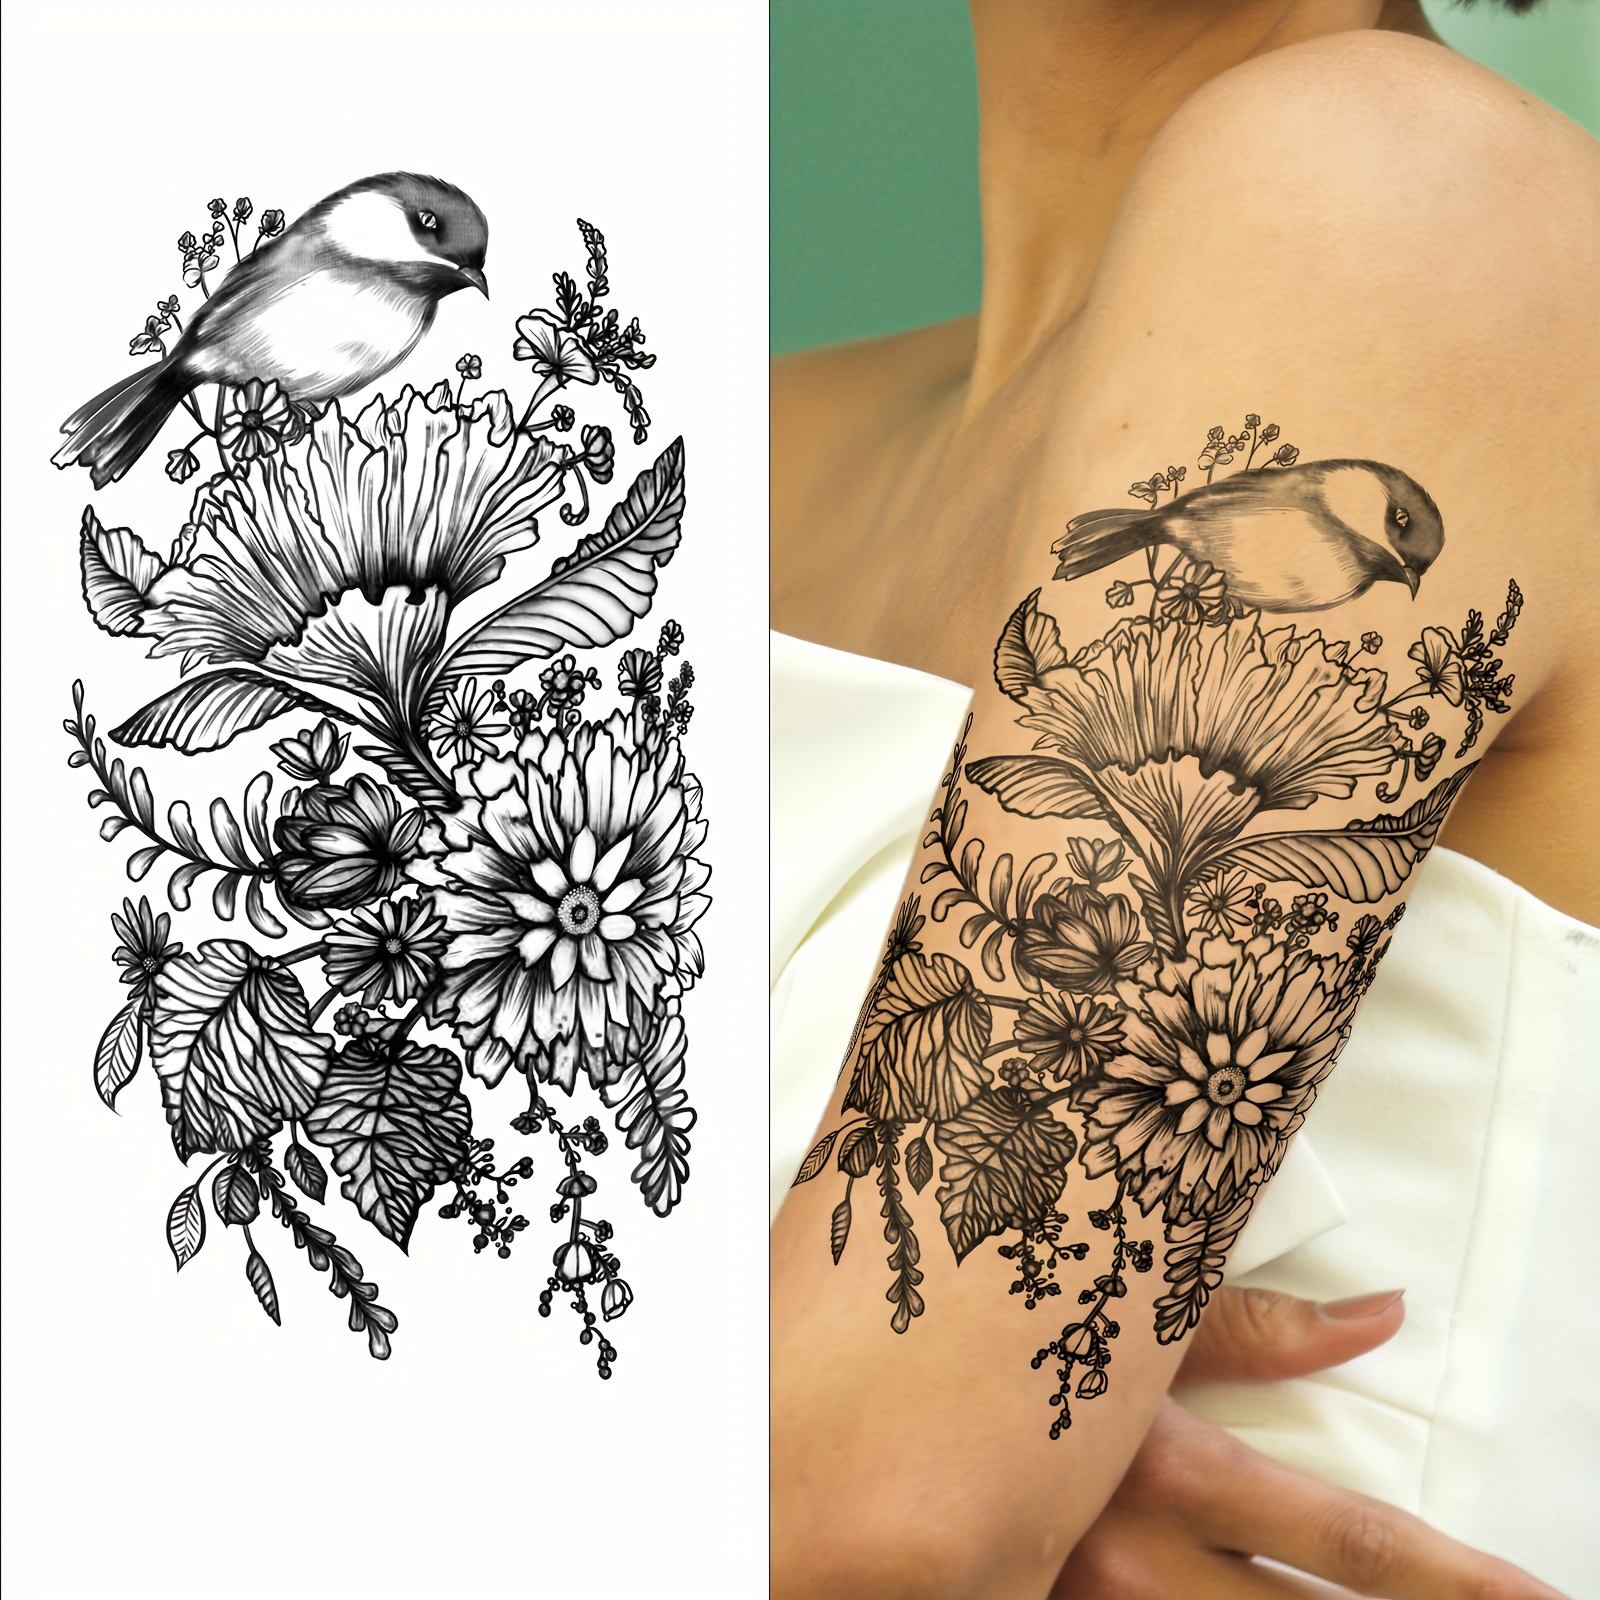 Paper Crane Temporary Tattoo / Small Tattoo / Paper Crane Gift Idea / Bird  Temporary Tattoo 